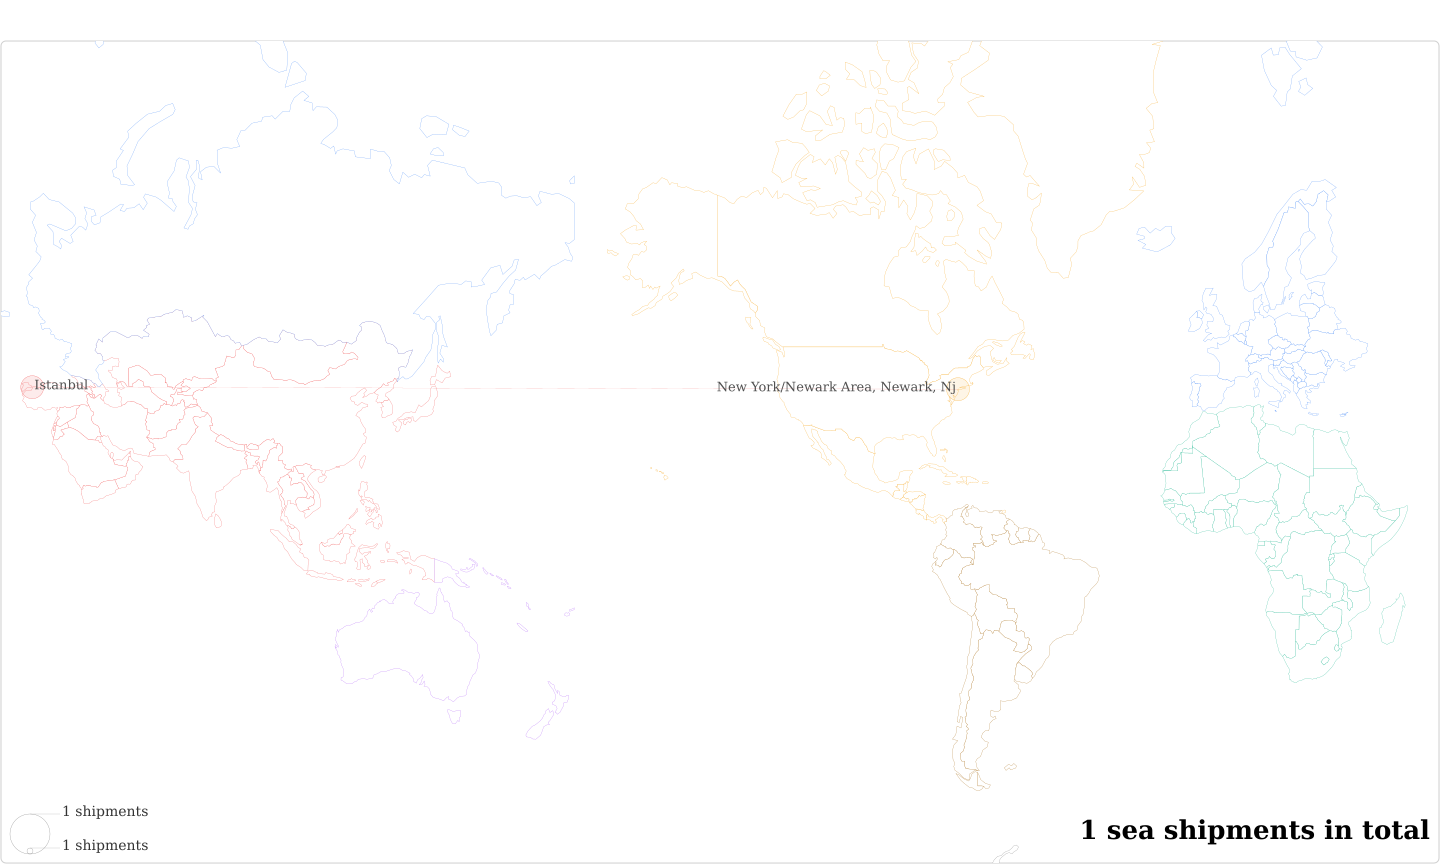 Tufan Saraciye Ur Ayakkabicilik Deri Ve Tek San Tic's Imports Per Country Map